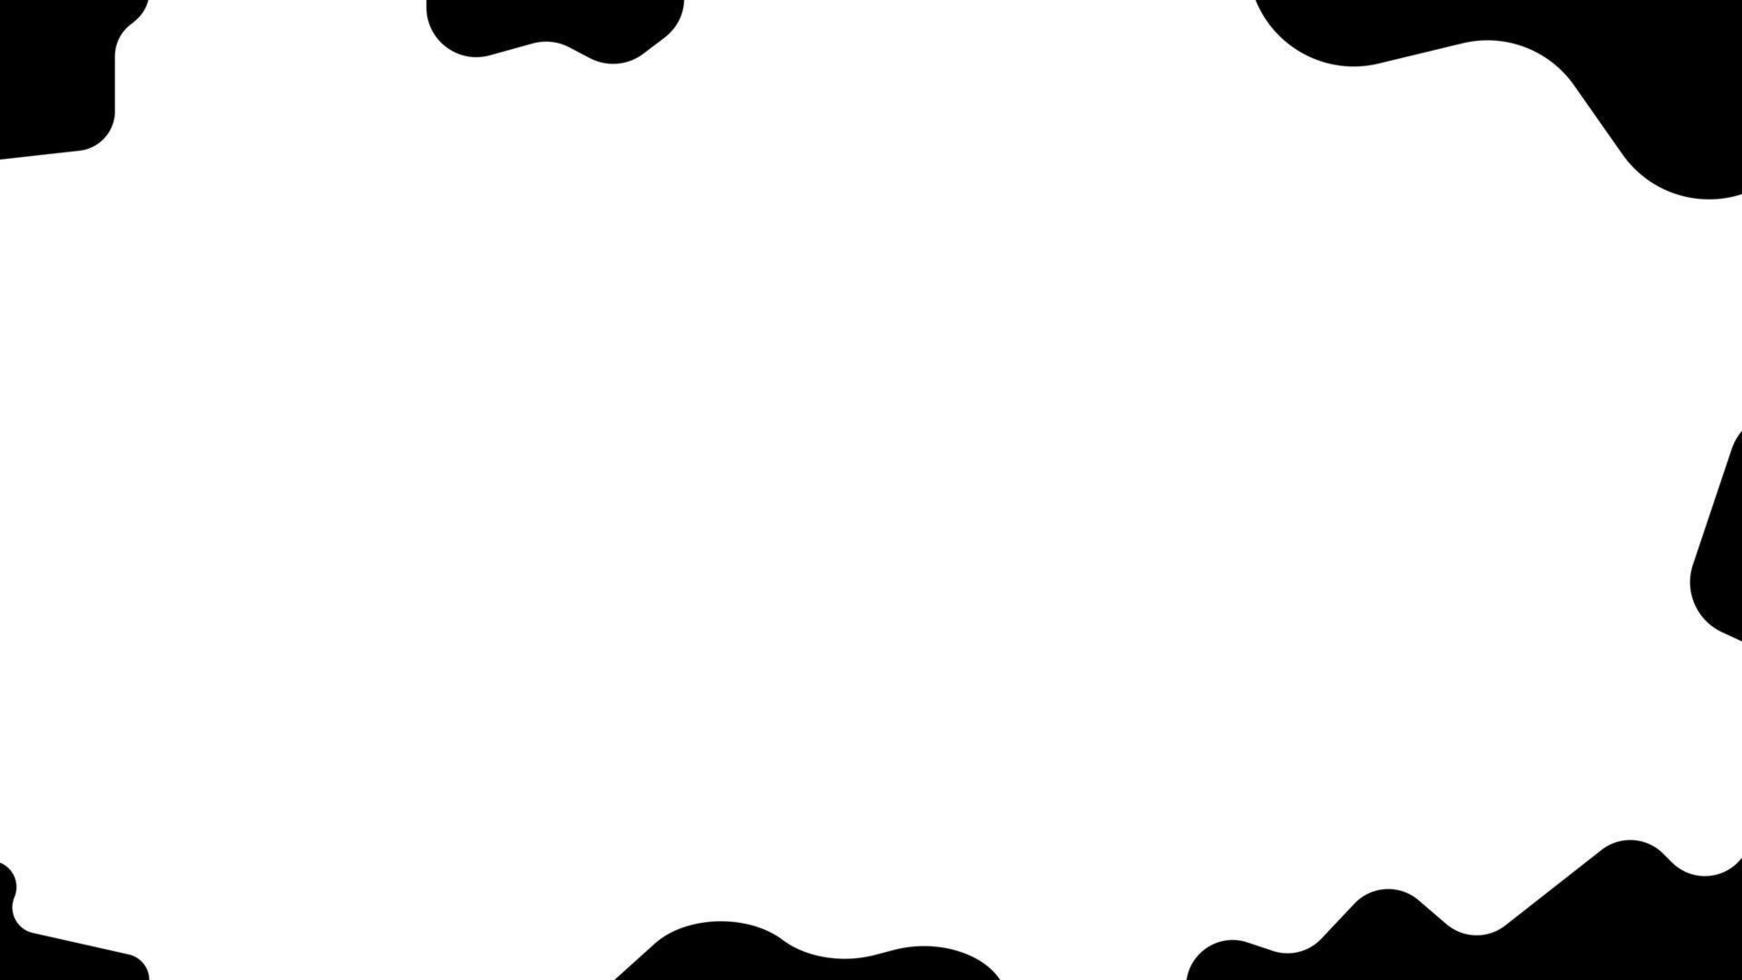 niedliche Kuh schwarz-weiß abstrakter Hintergrund, perfekt für Tapeten, Kulissen, Postkarten, Hintergrund vektor